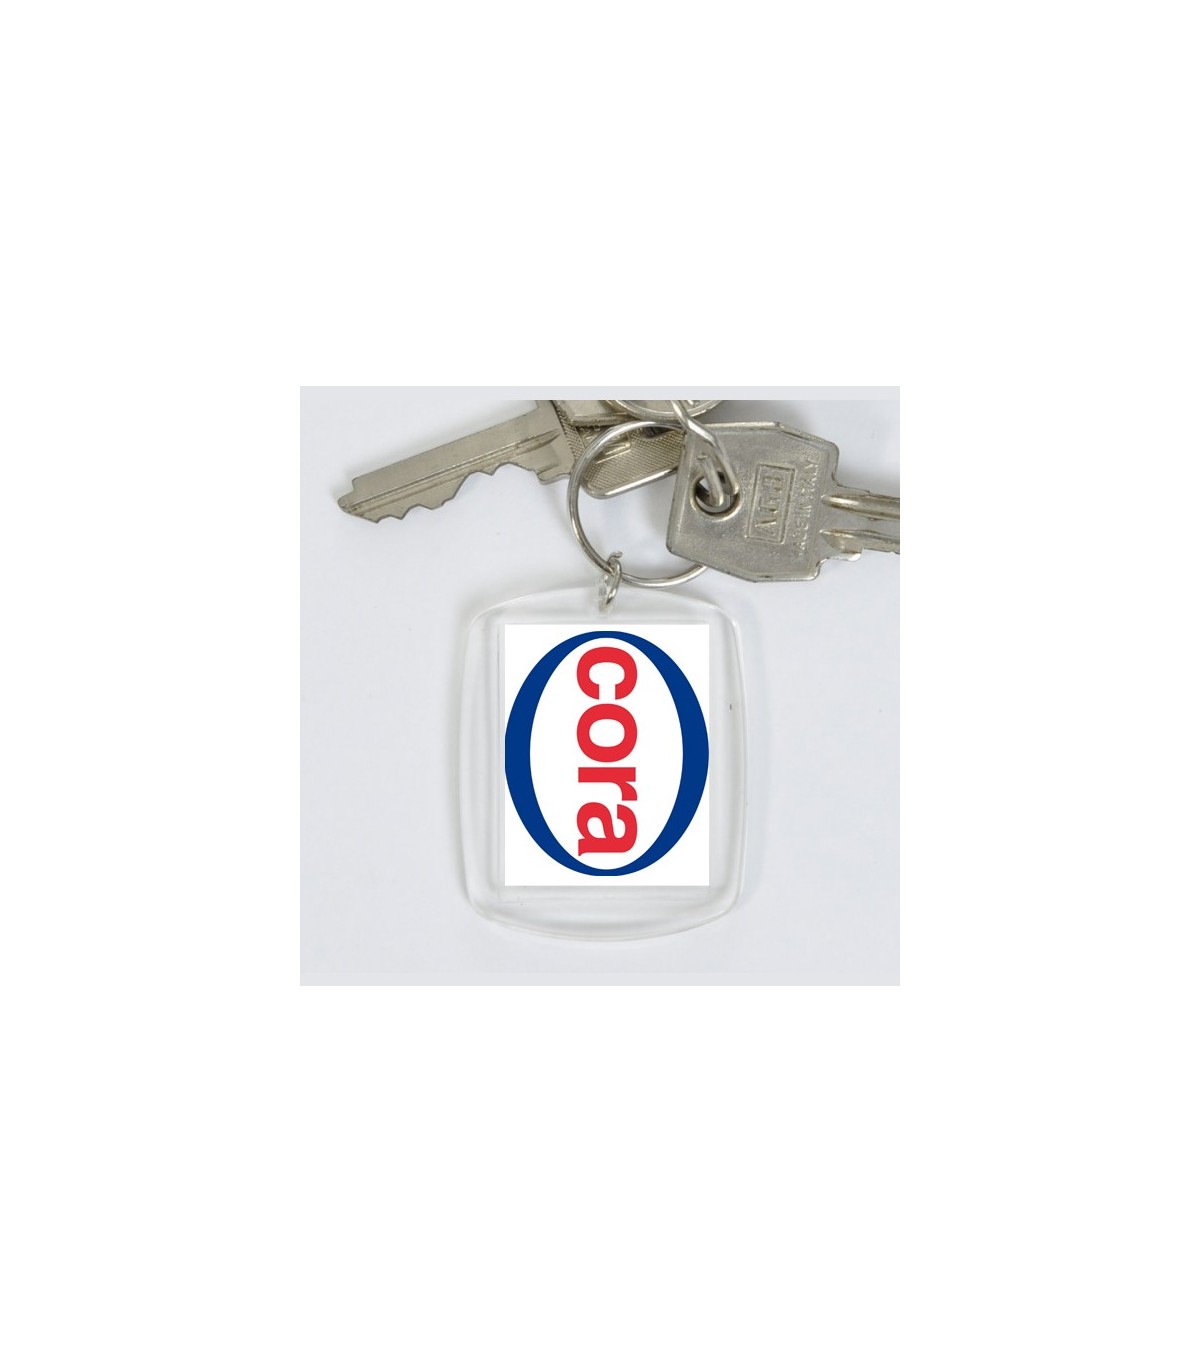 Porte clé personnalisé plastique avec logo, communication ob